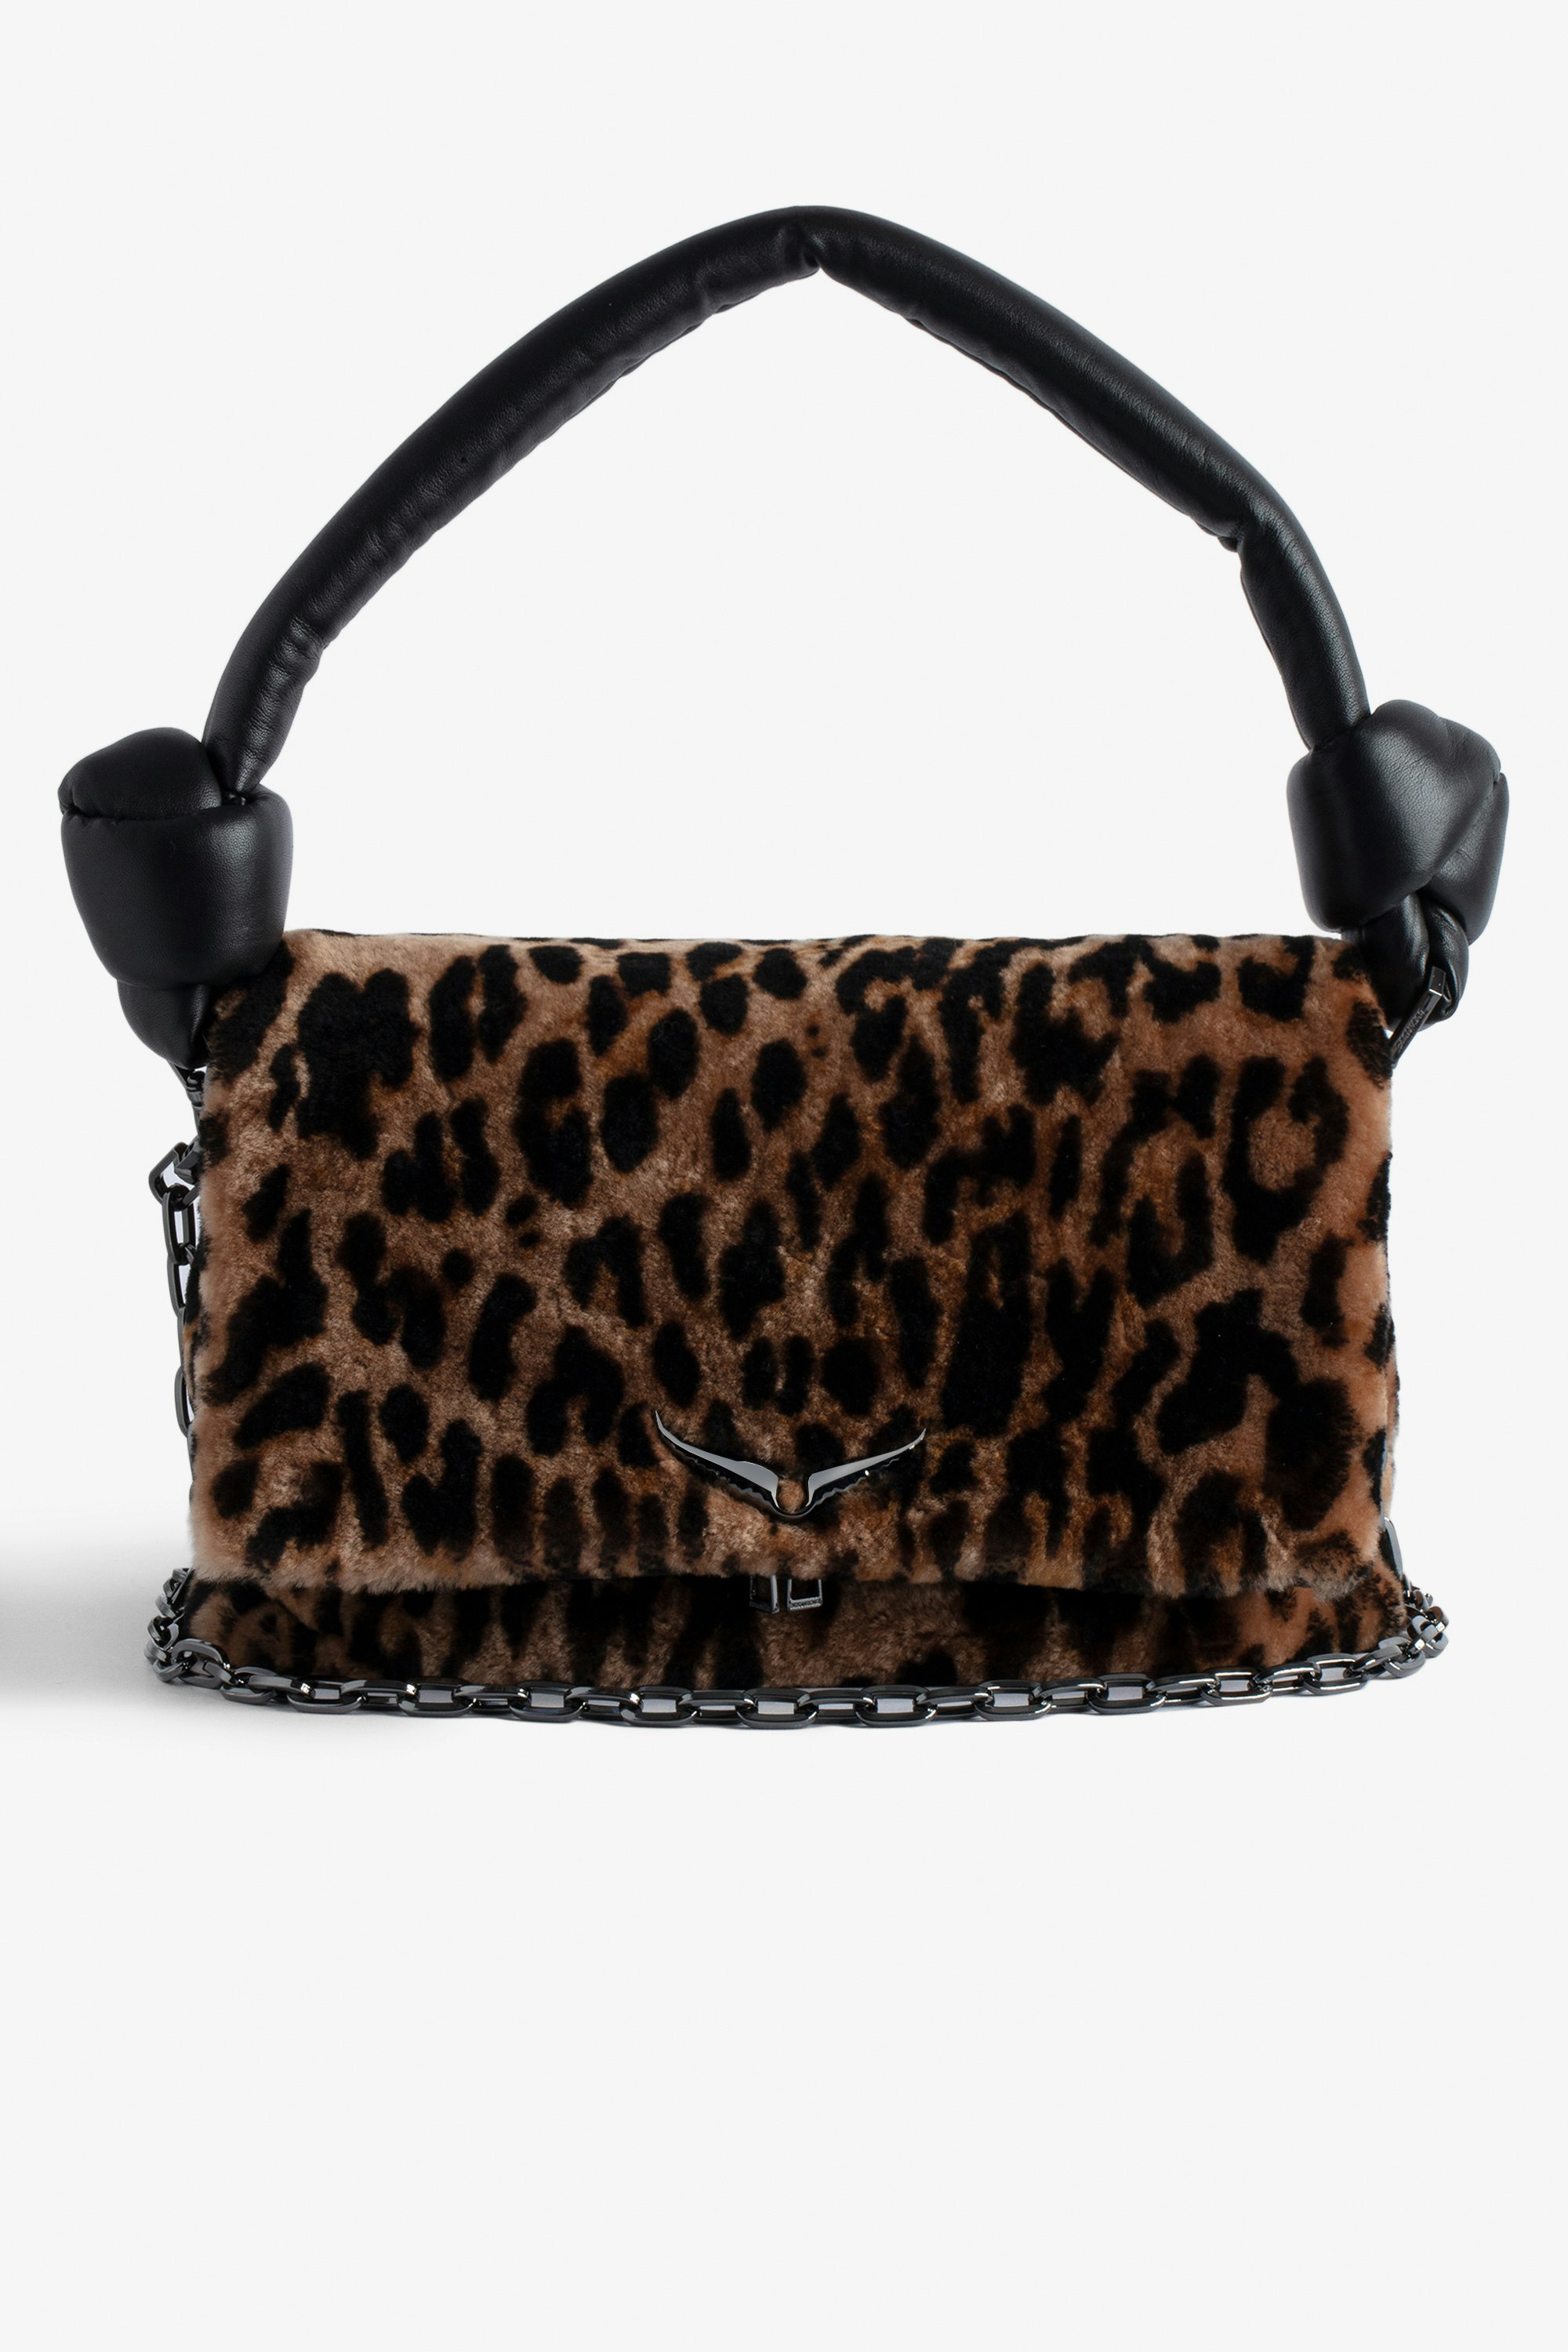 Tasche Rocky Eternal Leopard Braune Shearling-Ledertasche mit Leoparden-Print, geknotetem Schulterriemen, Kette und Flügel-Charm für Damen.